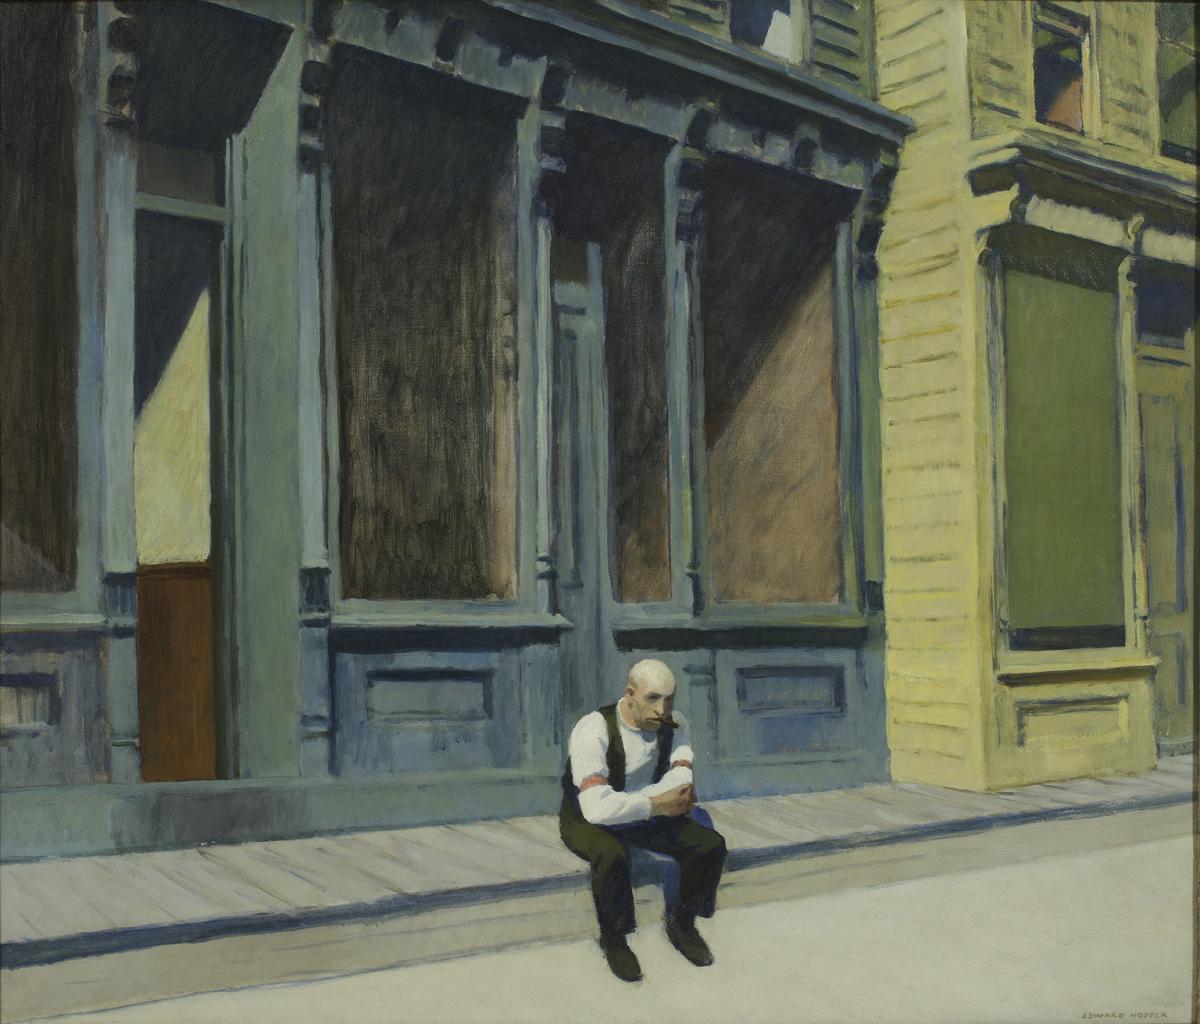 Edward Hopper, Sunday, 1926